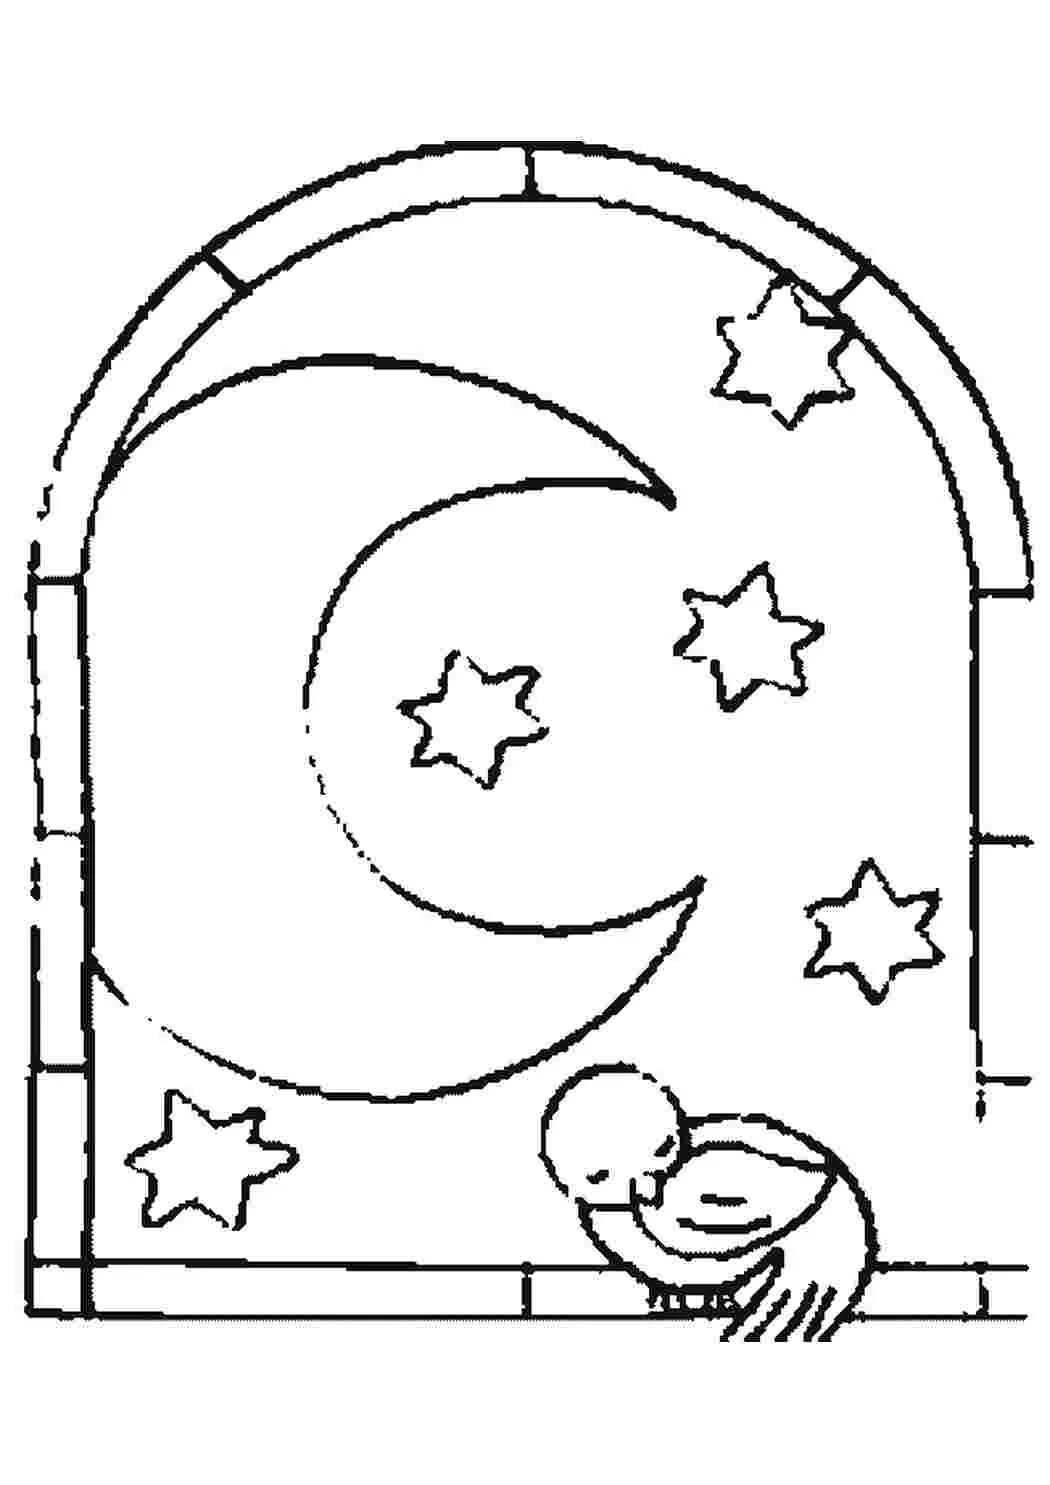 Ночь раскраска для детей. Раскраска месяц и звезды. Раскраска Луна и звезды. Трафарет месяц и звезды на окно.